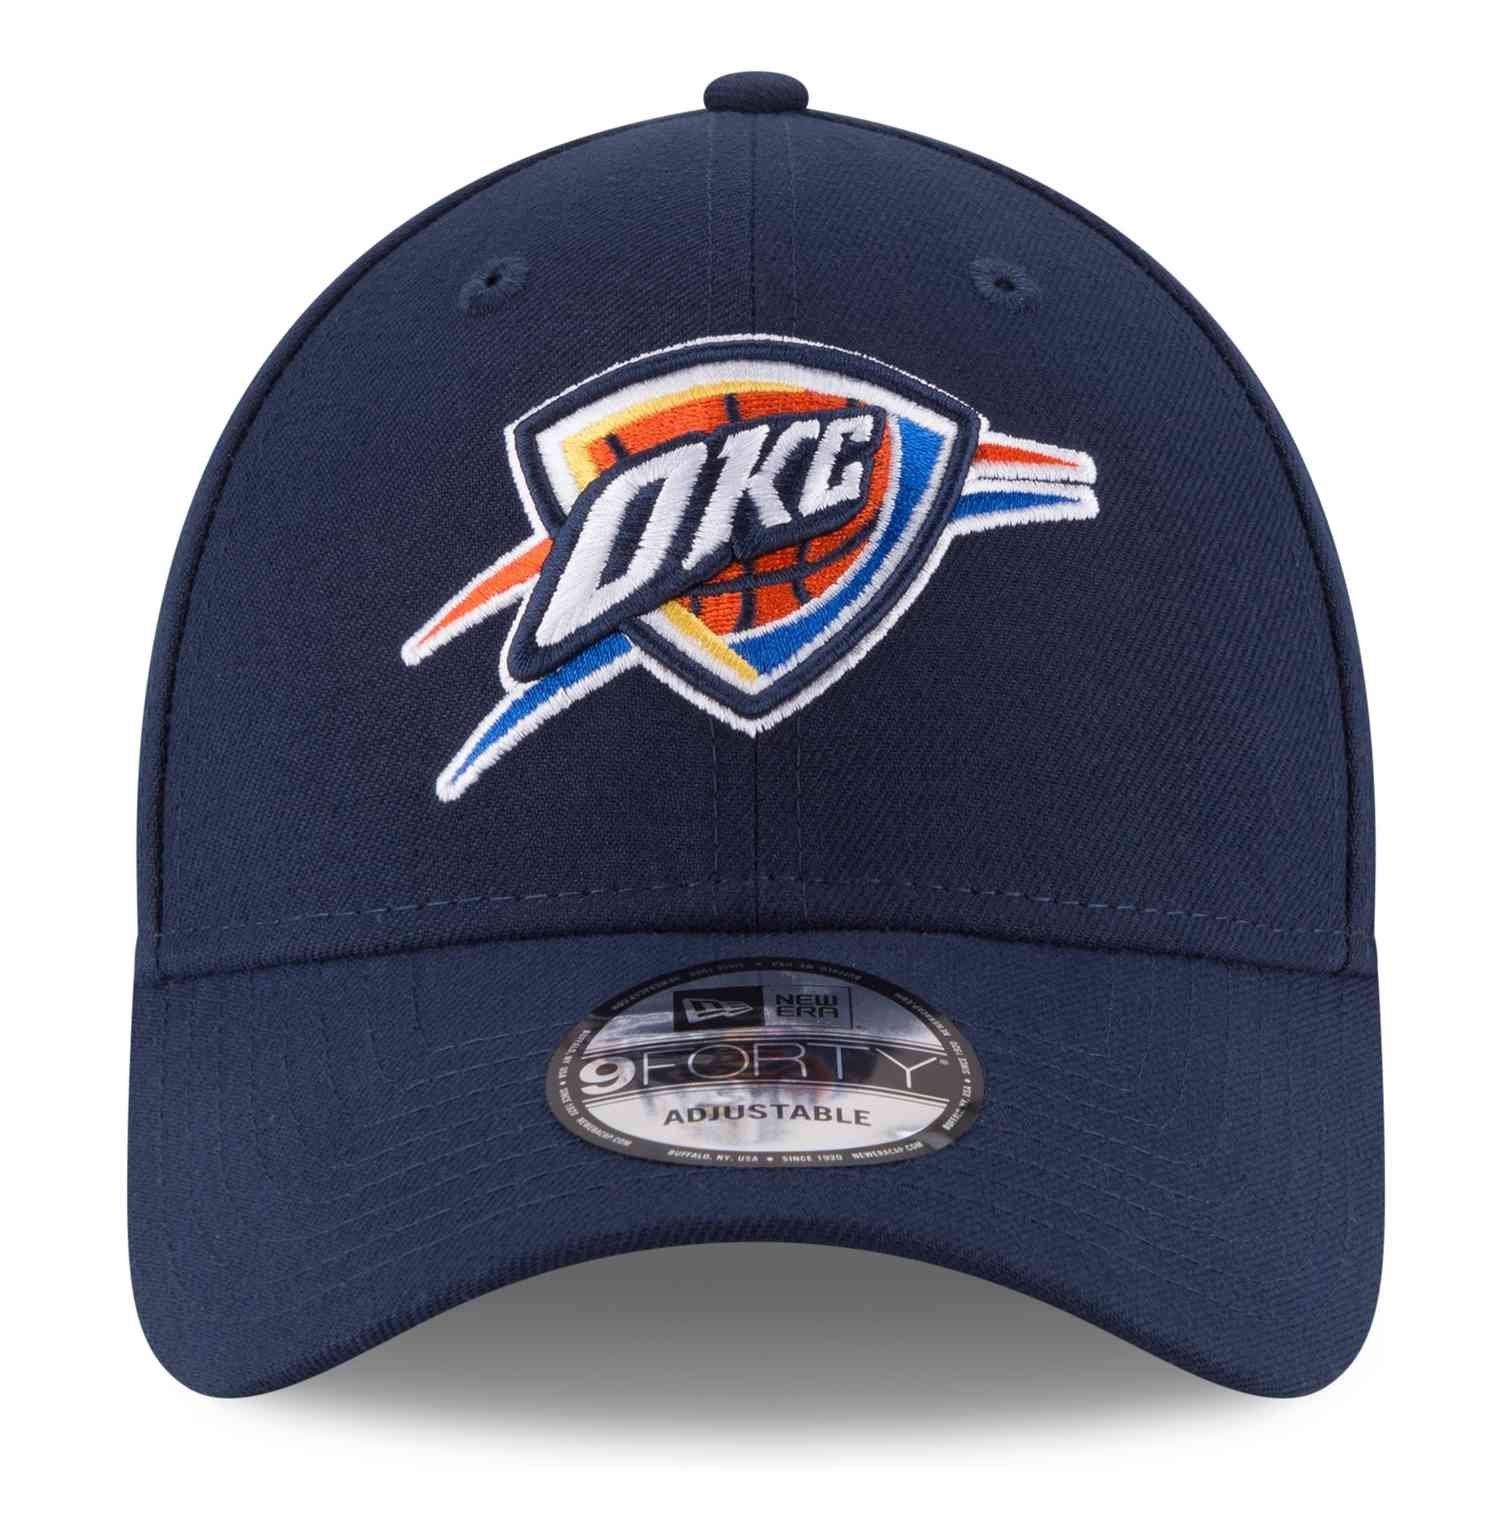 New Era Snapback Cap The 9Forty Oklahoma NBA League Thunder City